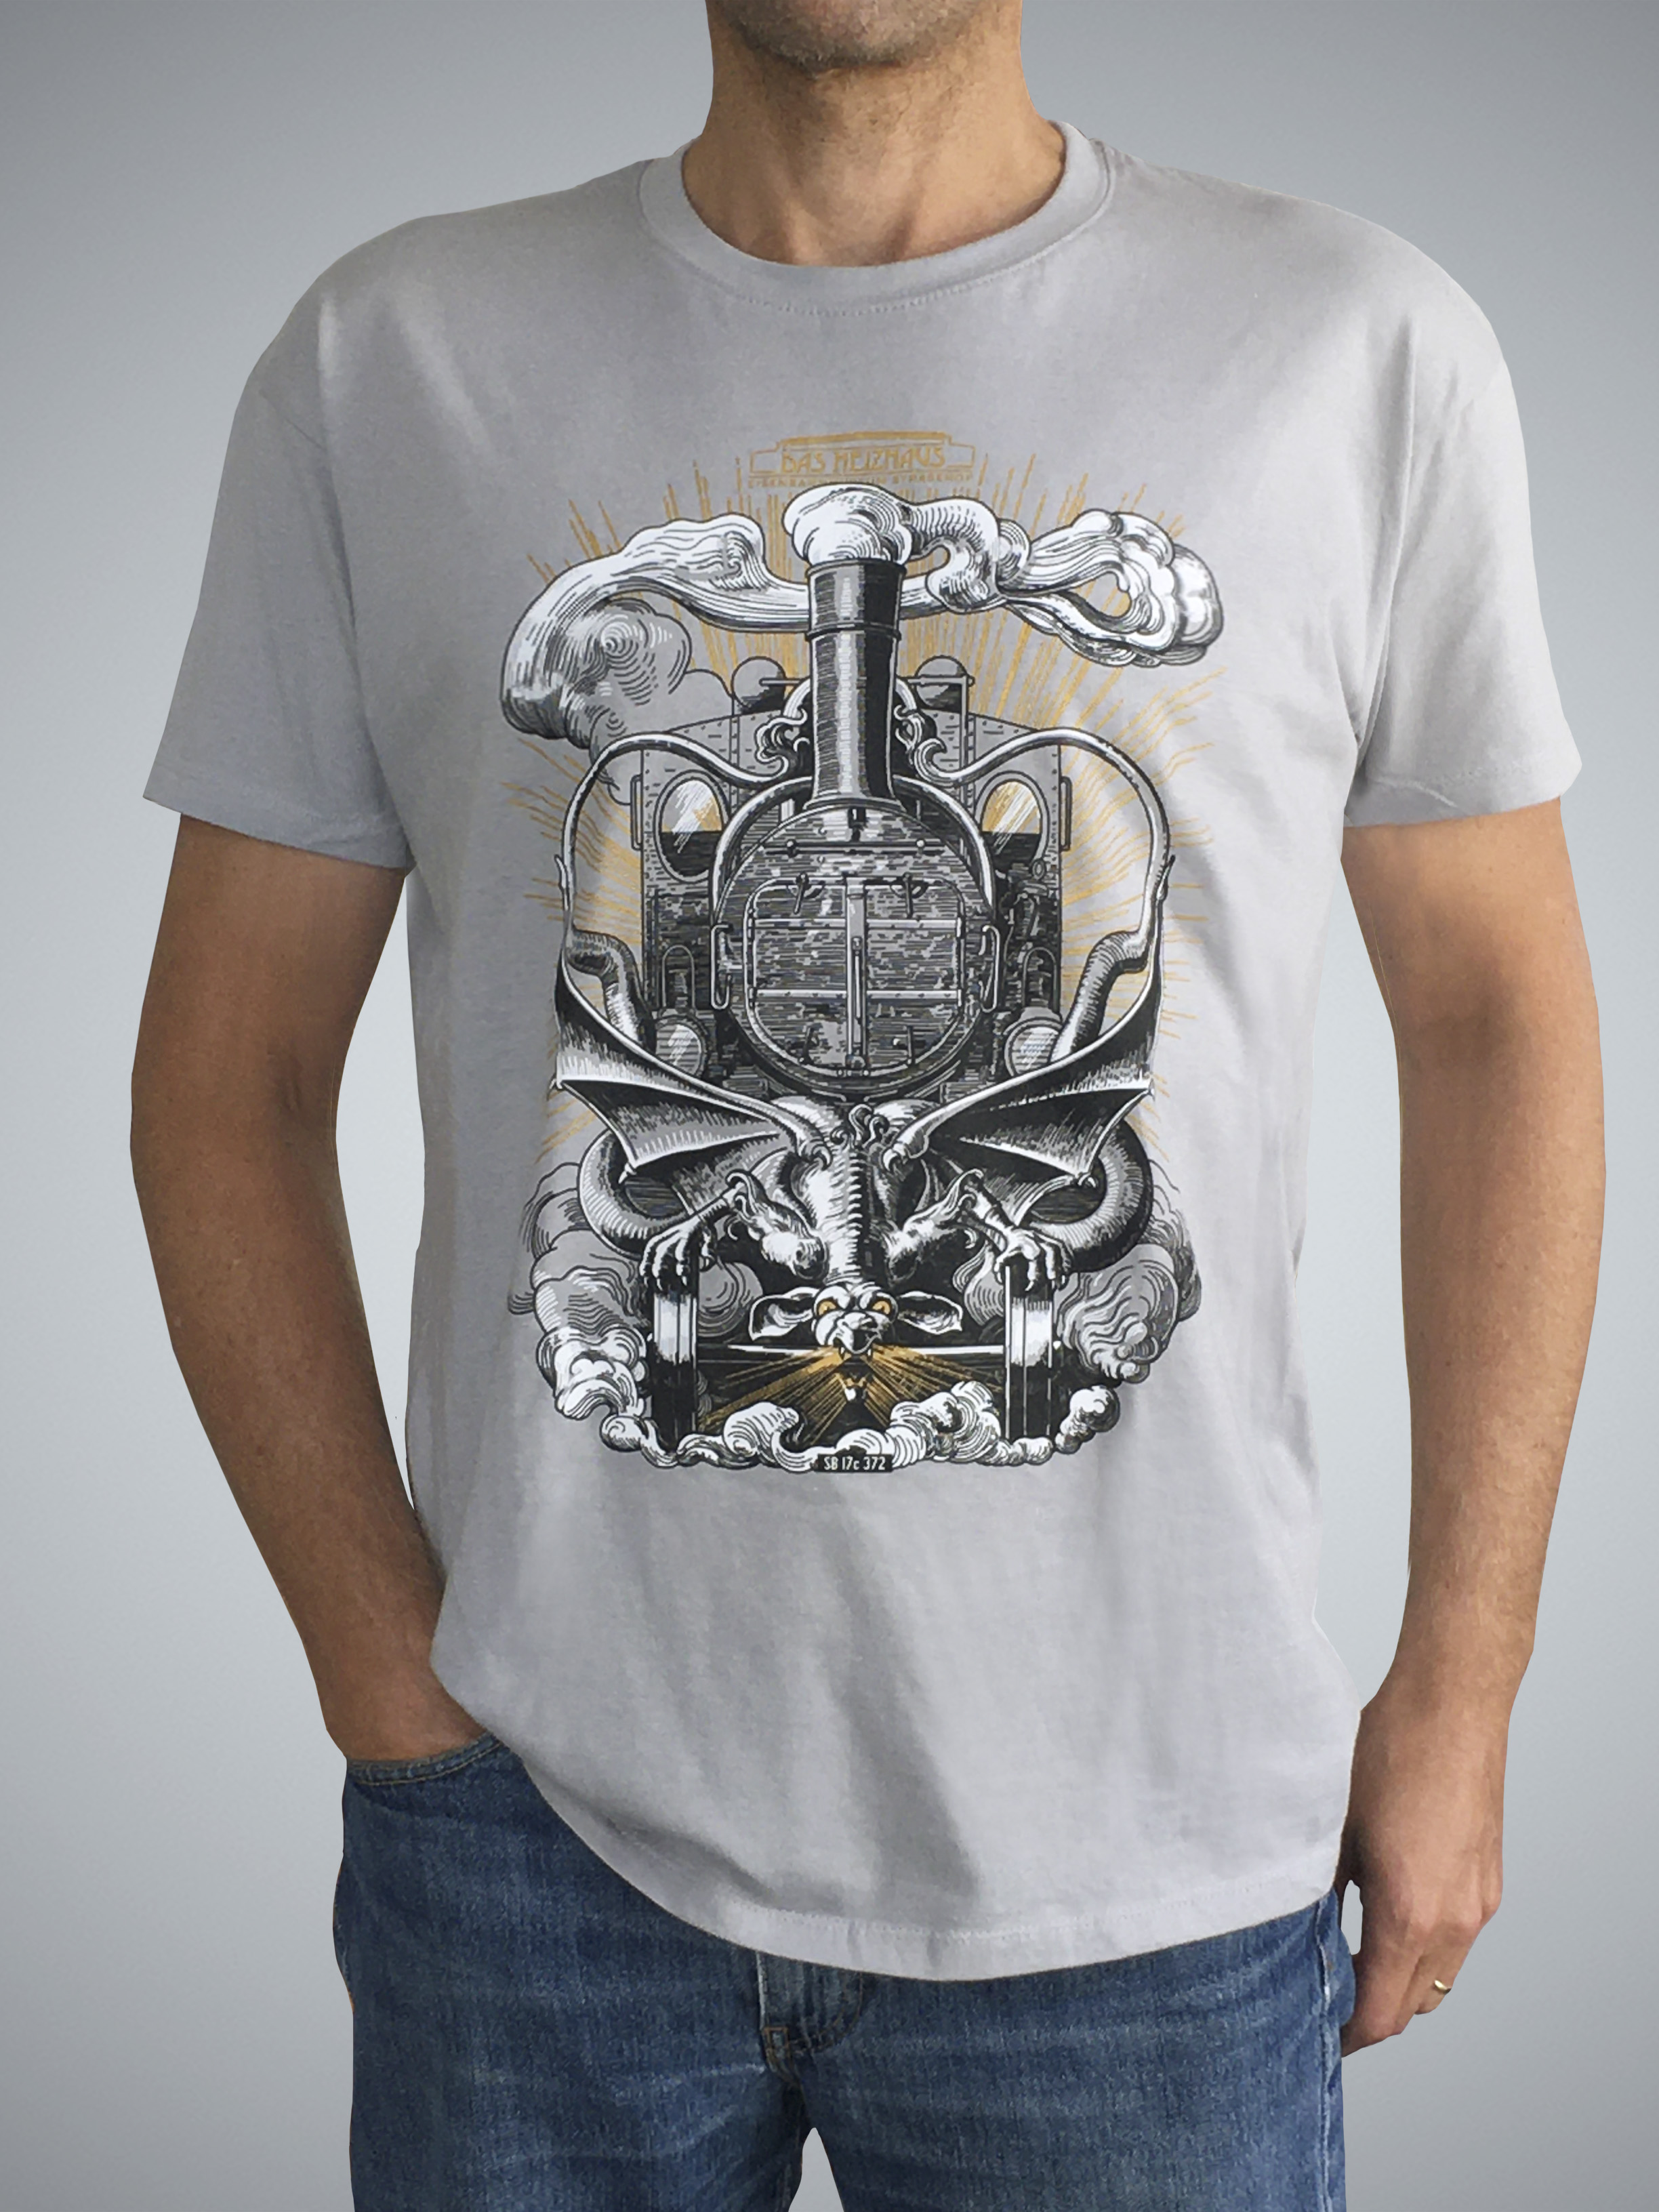 T-Shirt "Steampunk" für Erwachsene